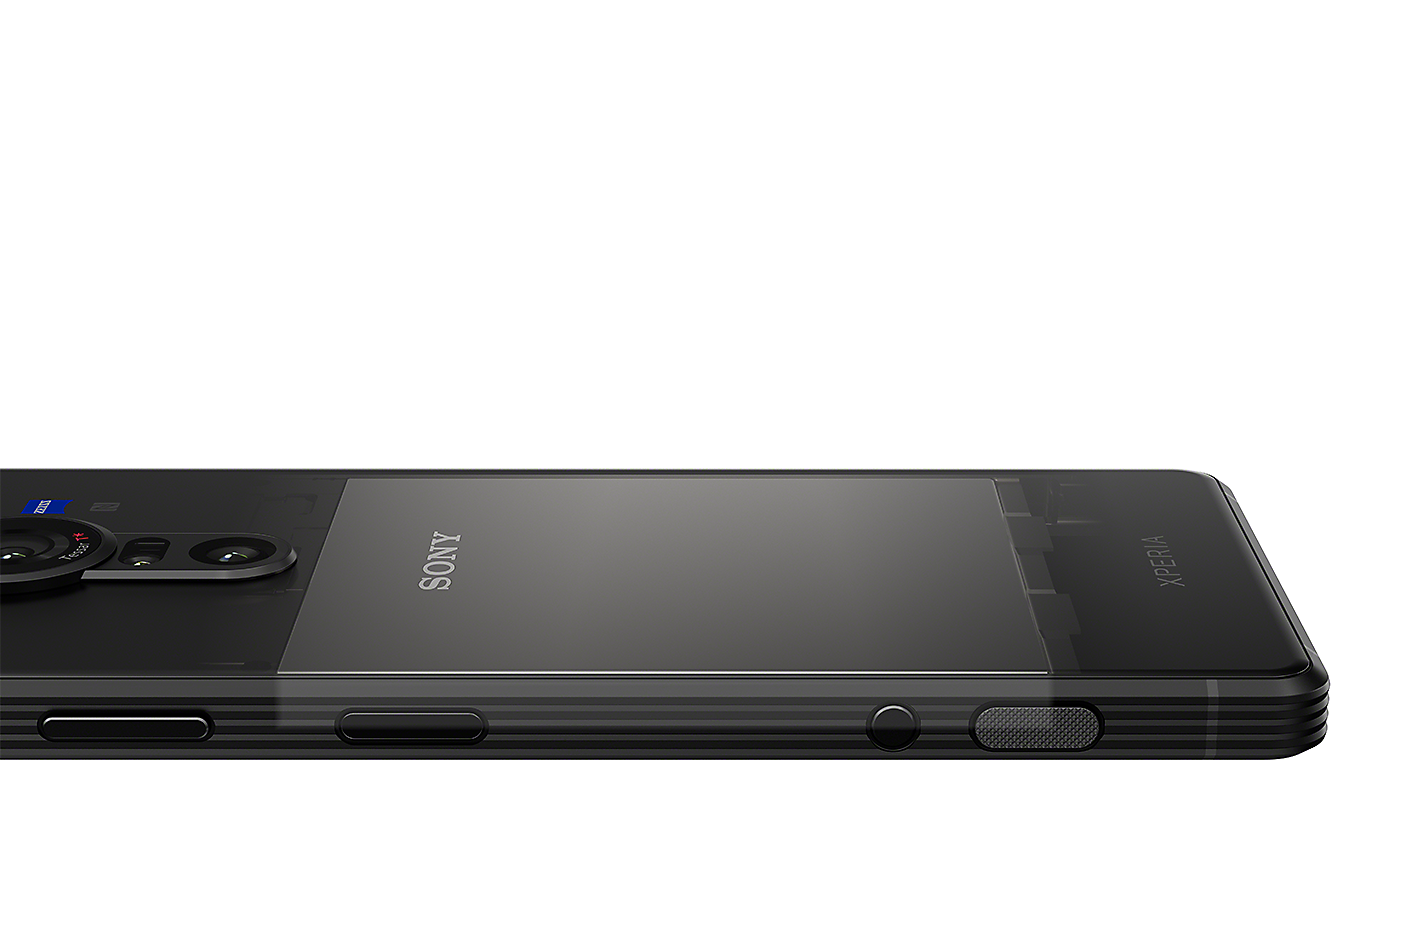 Rentgenový snímek smartphonu Xperia PRO-I zobrazující baterii